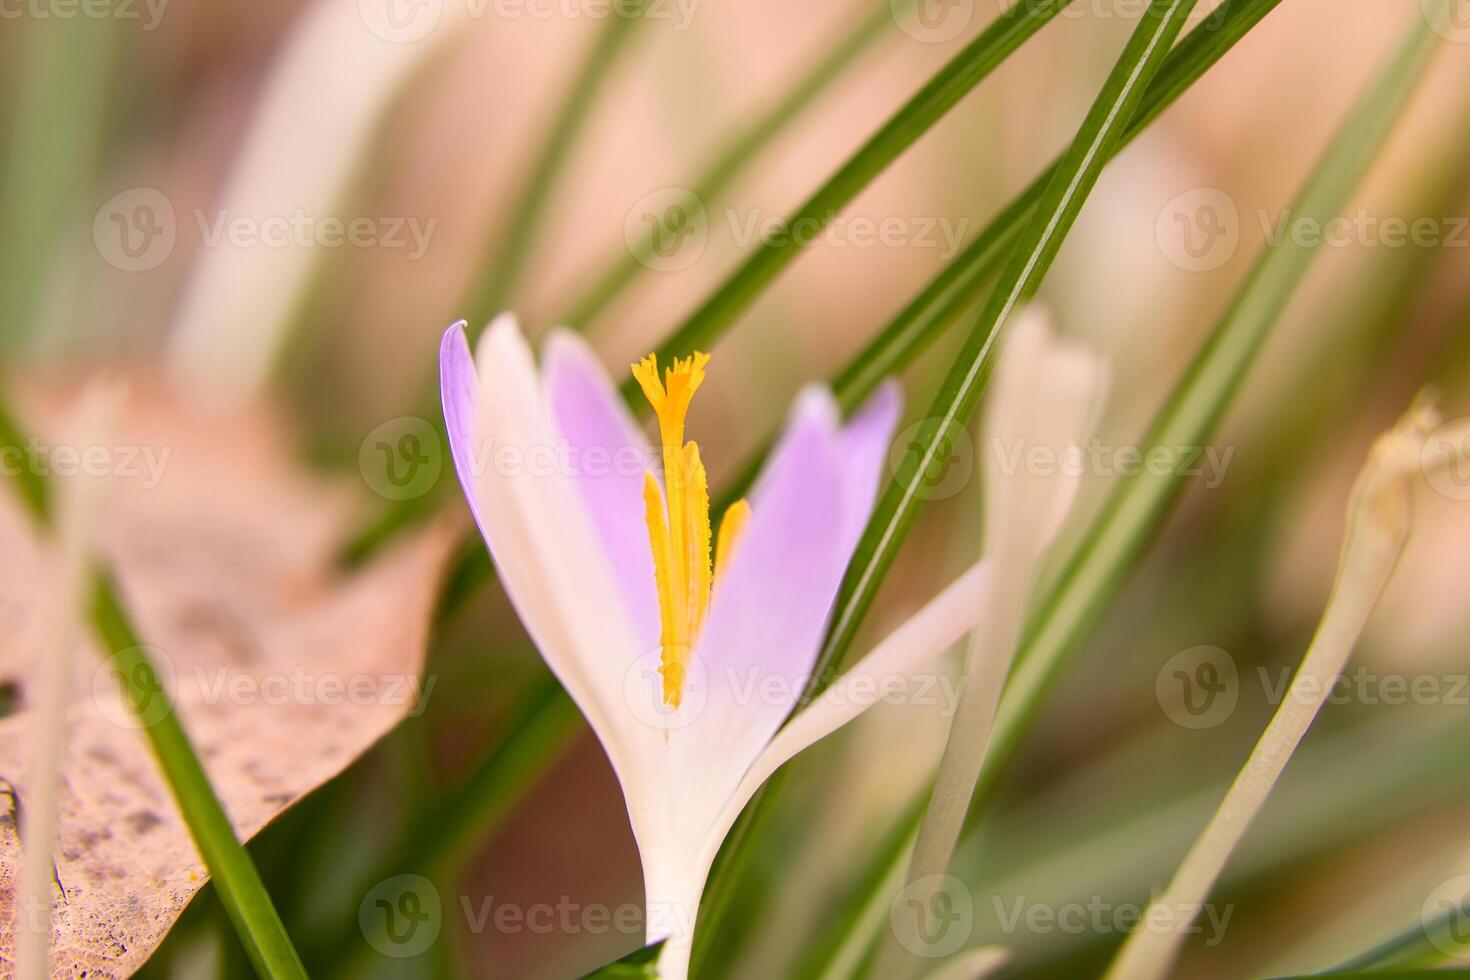 solteiro açafrão flor delicadamente retratado dentro suave caloroso claro. Primavera flores foto